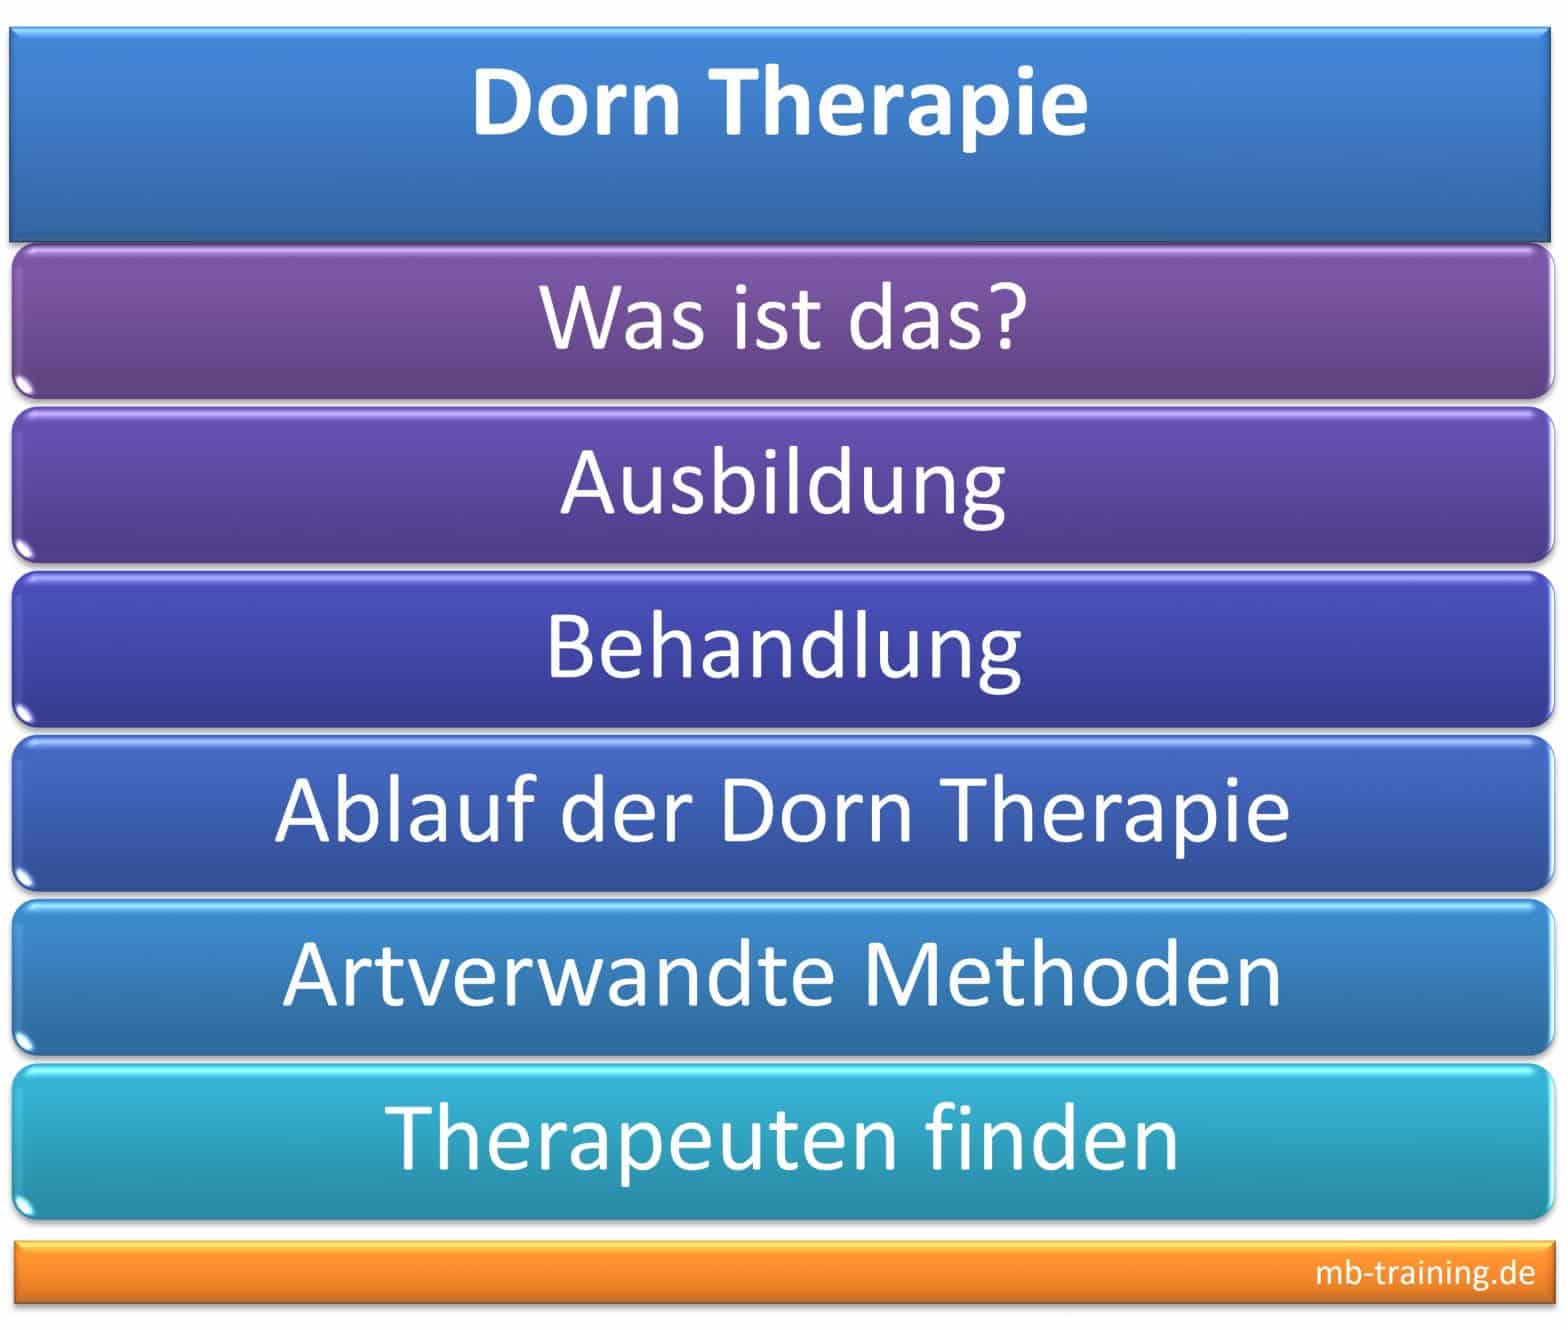 Dorn-Therapie Ausbildung (Inhalte, Kosten, Anbieter), Ablauf der Behandlung, Möglichkeiten der Anwendung, Alternative Methoden.